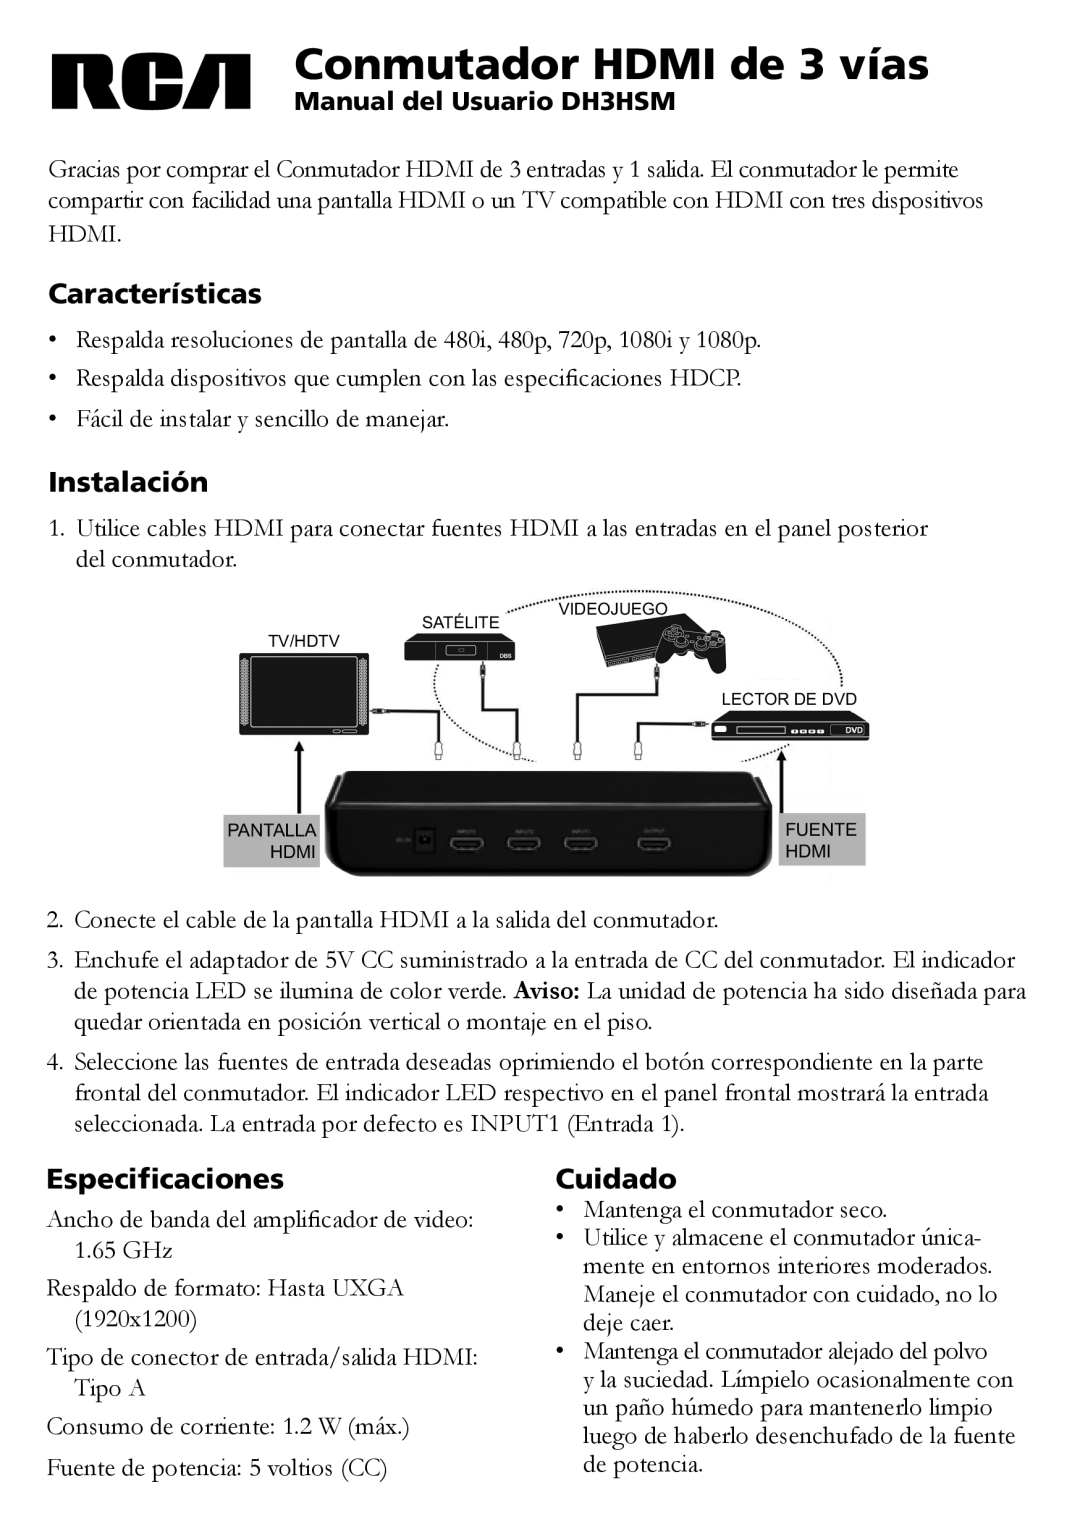 RCA Conmutador HDMI de 3 vías, Características, Instalación, Especificaciones, Cuidado, Manual del Usuario DH3HSM 